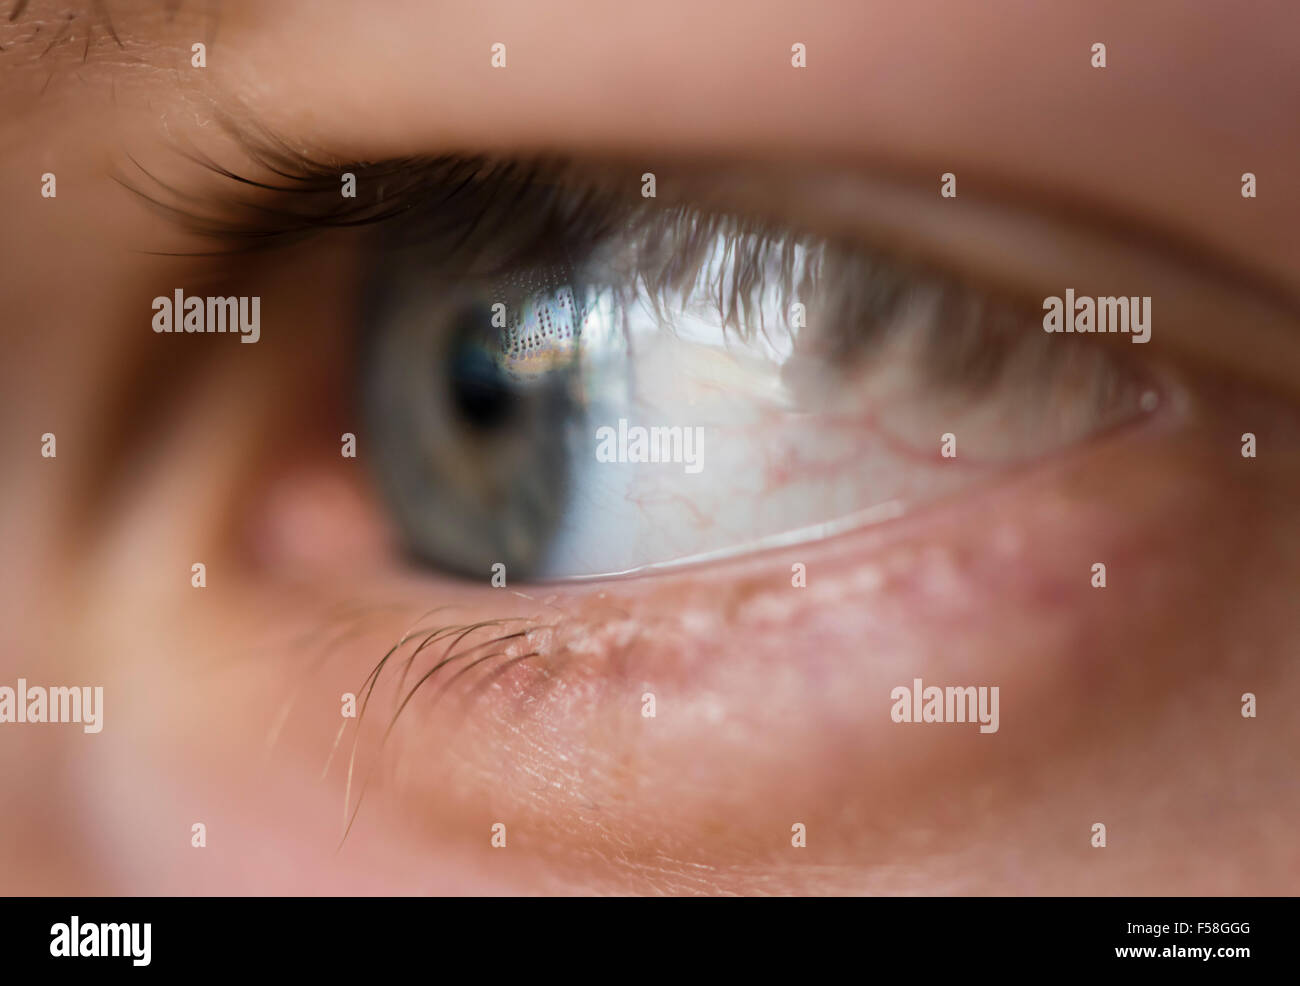 Close-up d'un œil humain avec une lentille de contact. Lentille visibles mentions légales données, écrits en petits points sur l'objectif Banque D'Images